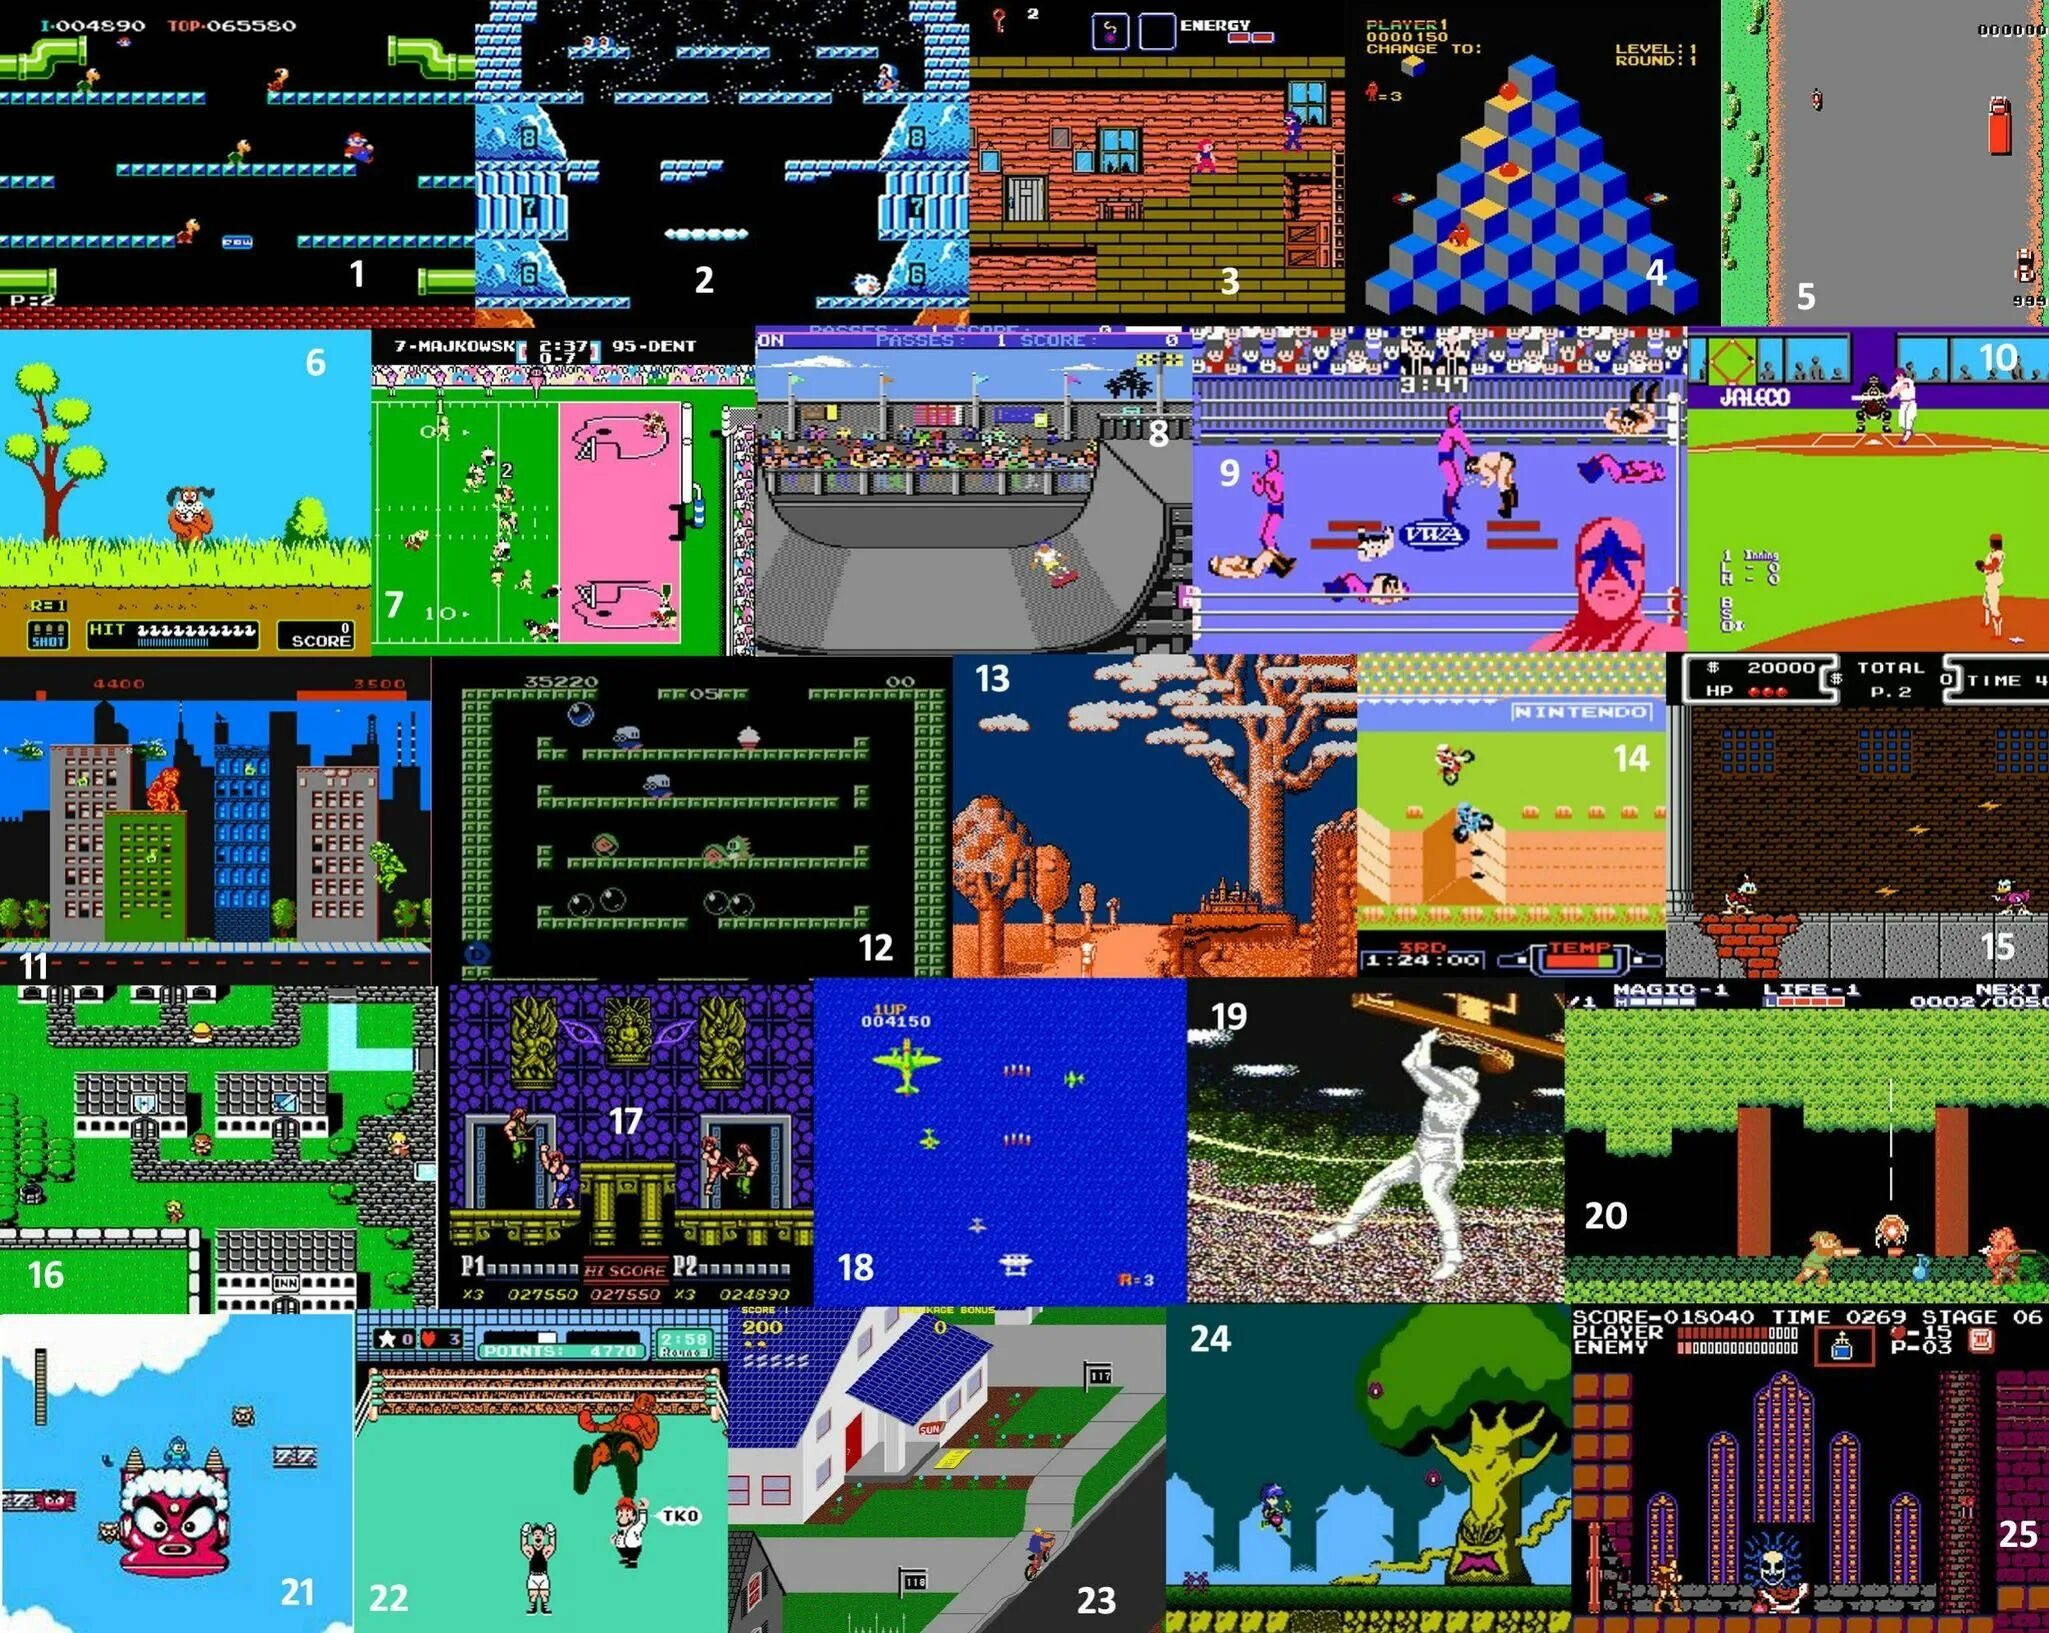 Video game nes. NES игры. Nintendo Entertainment System игры. Топ игра на NES. Текстуры из игр игр NES.